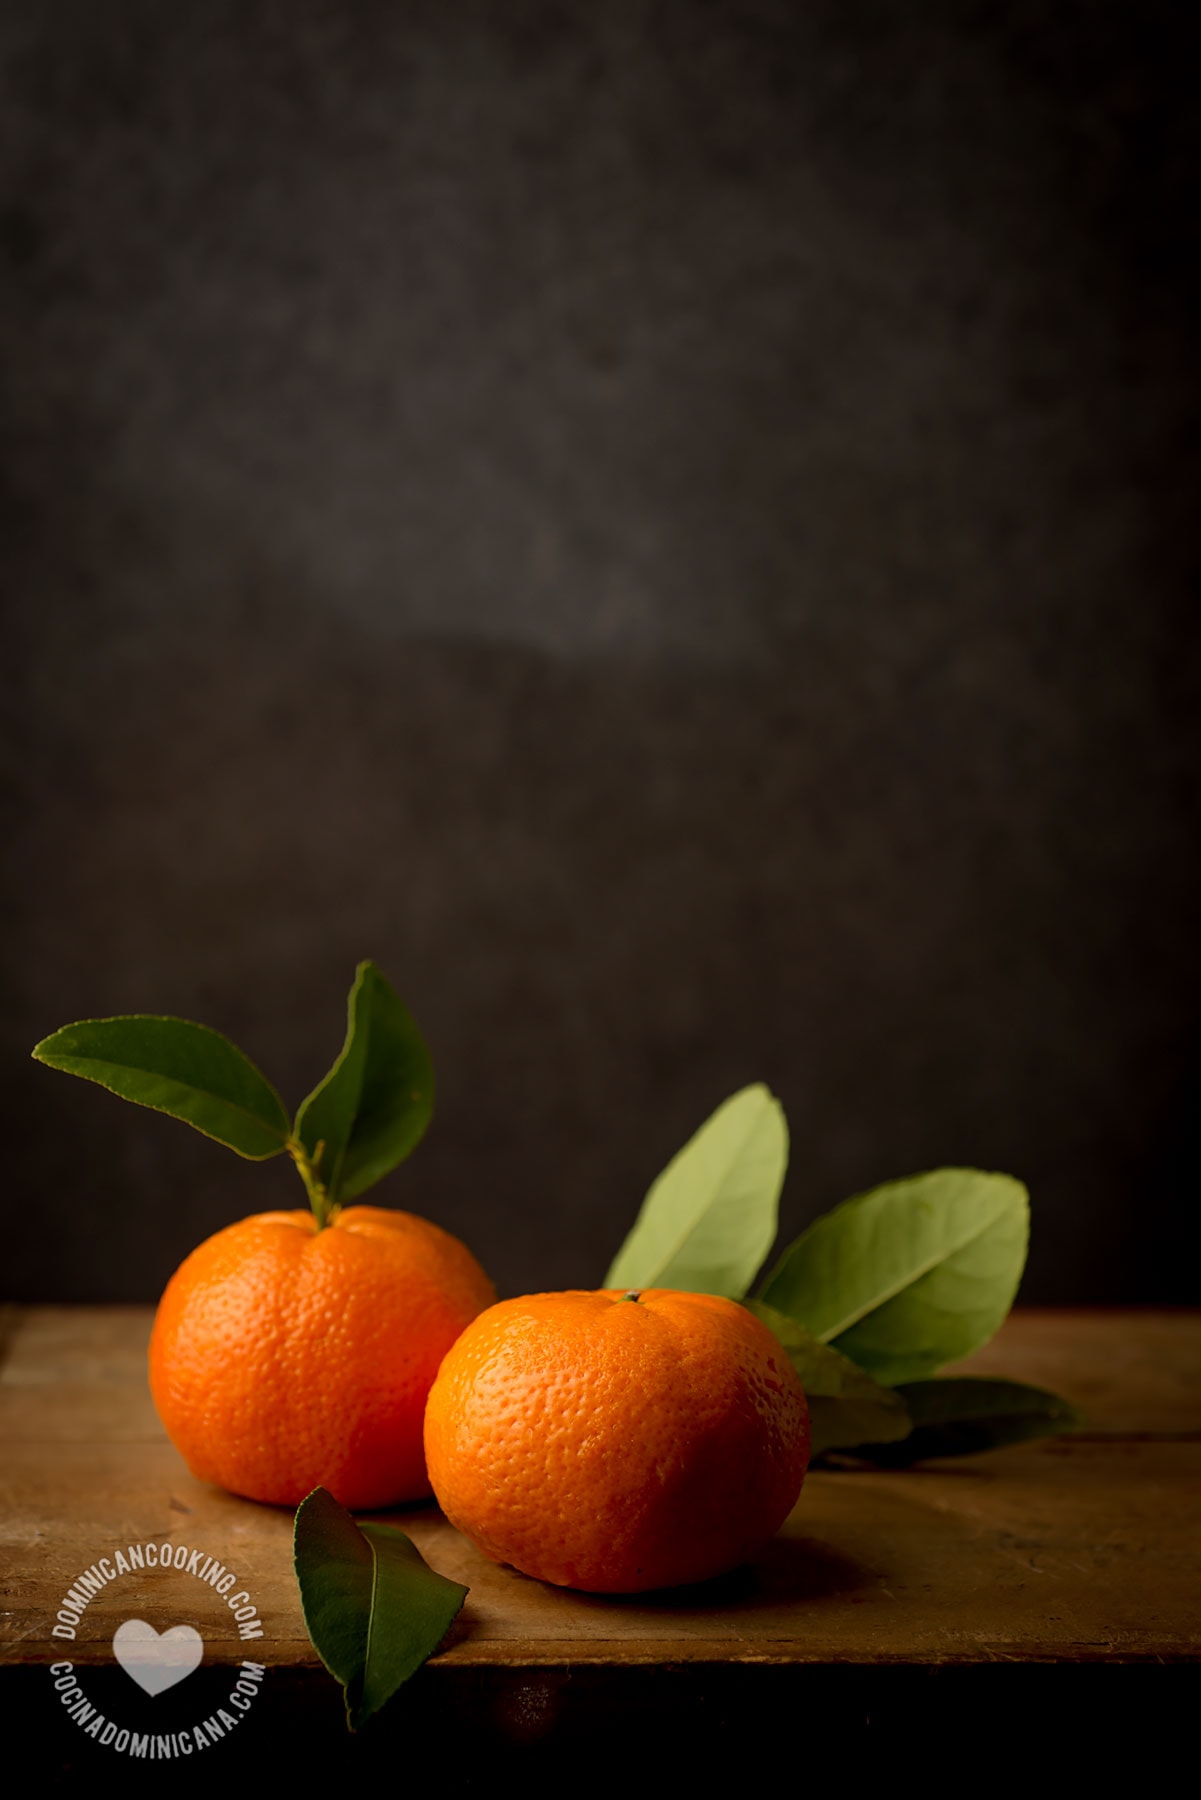 Mandarin oranges.